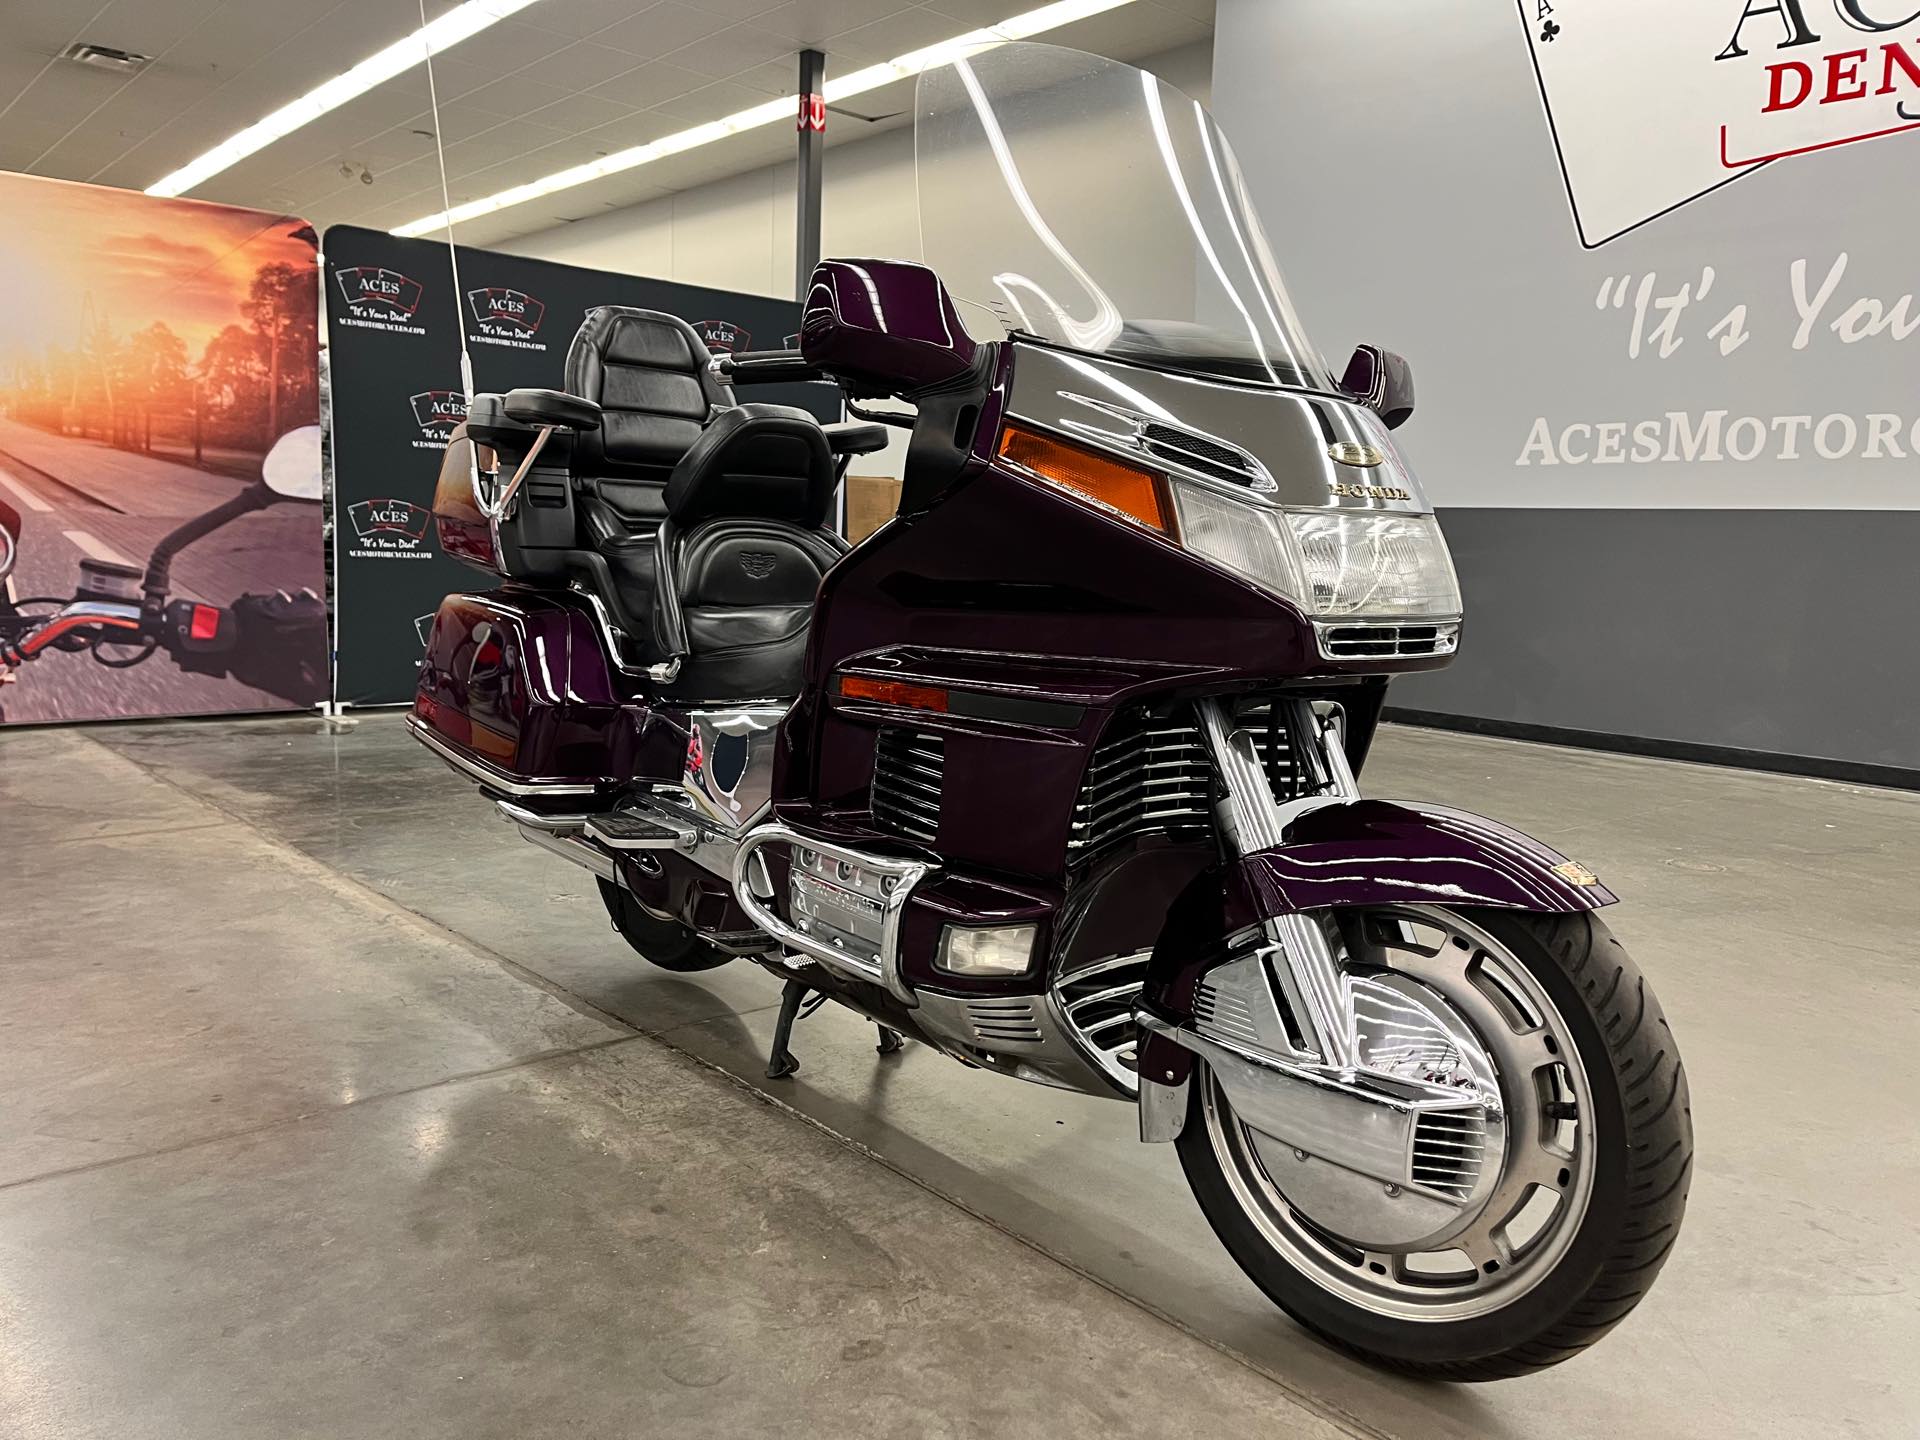 1995 HONDA GL1500 at Aces Motorcycles - Denver